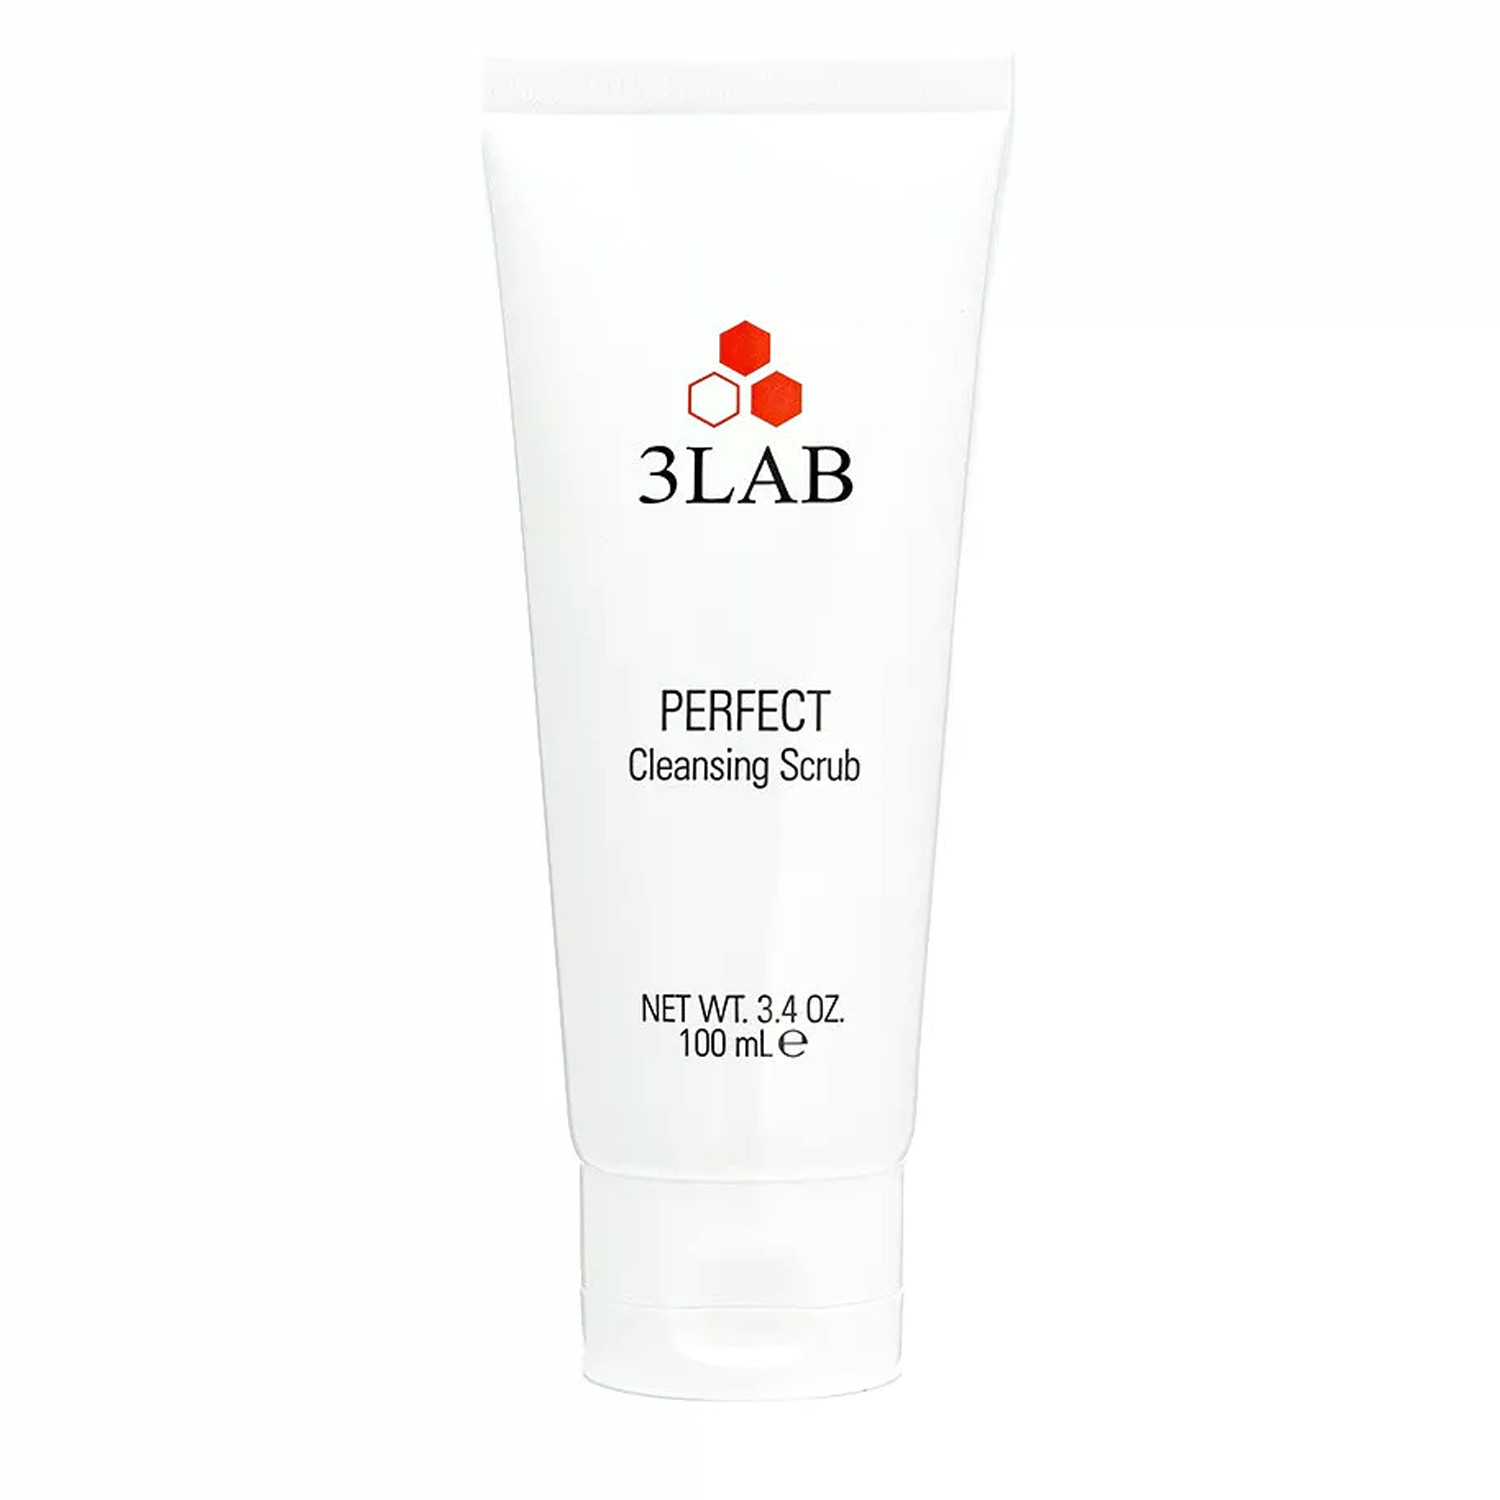 Очищаючий скраб для обличчя 3LAB Perfect Cleansing Scrub